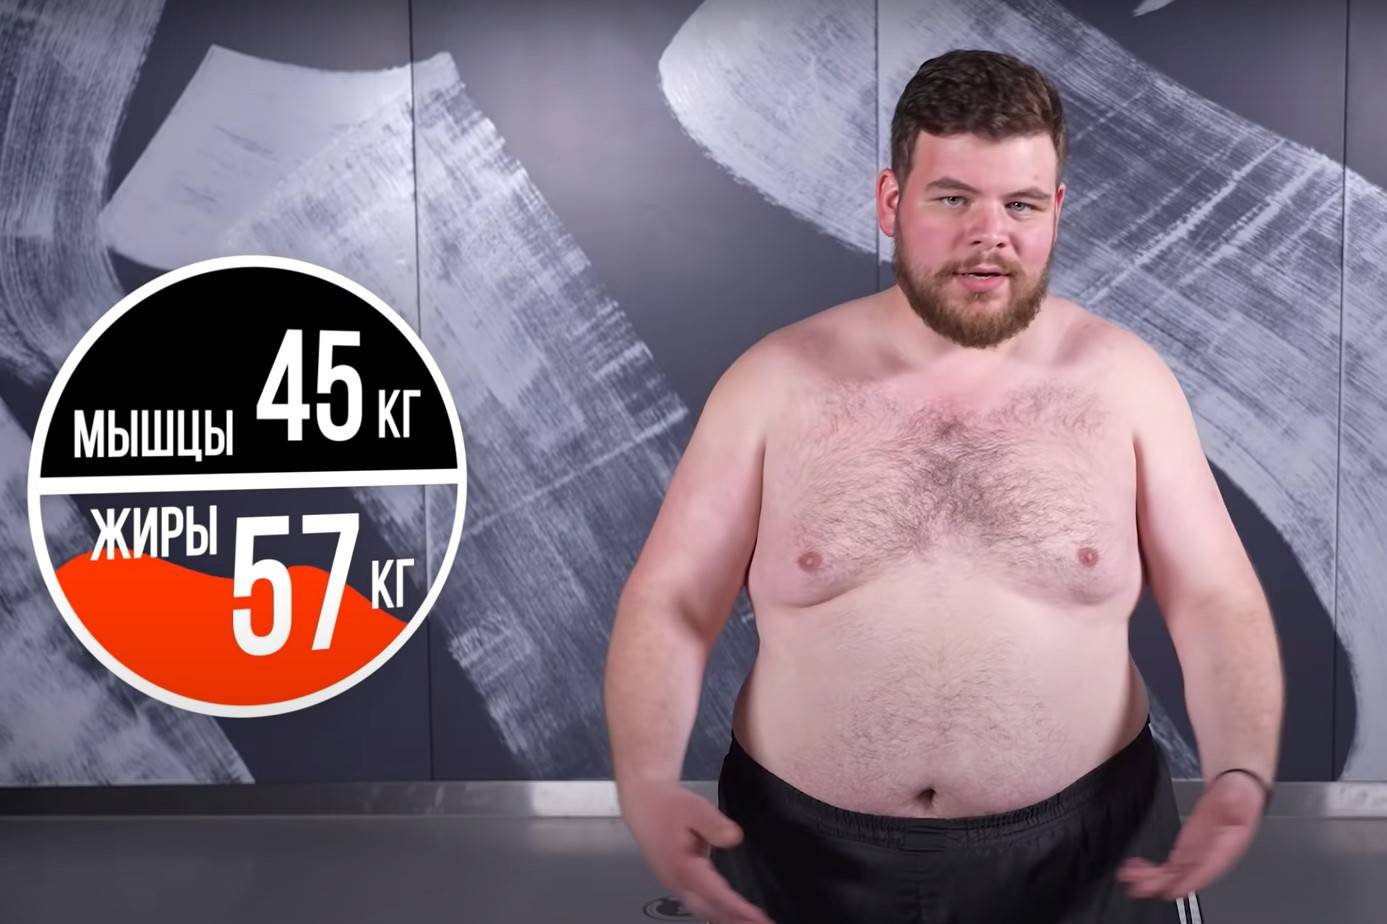 Участник российского YouTube-шоу для похудения быстро сбросил 18 кг и умер, не выдержав нагрузки